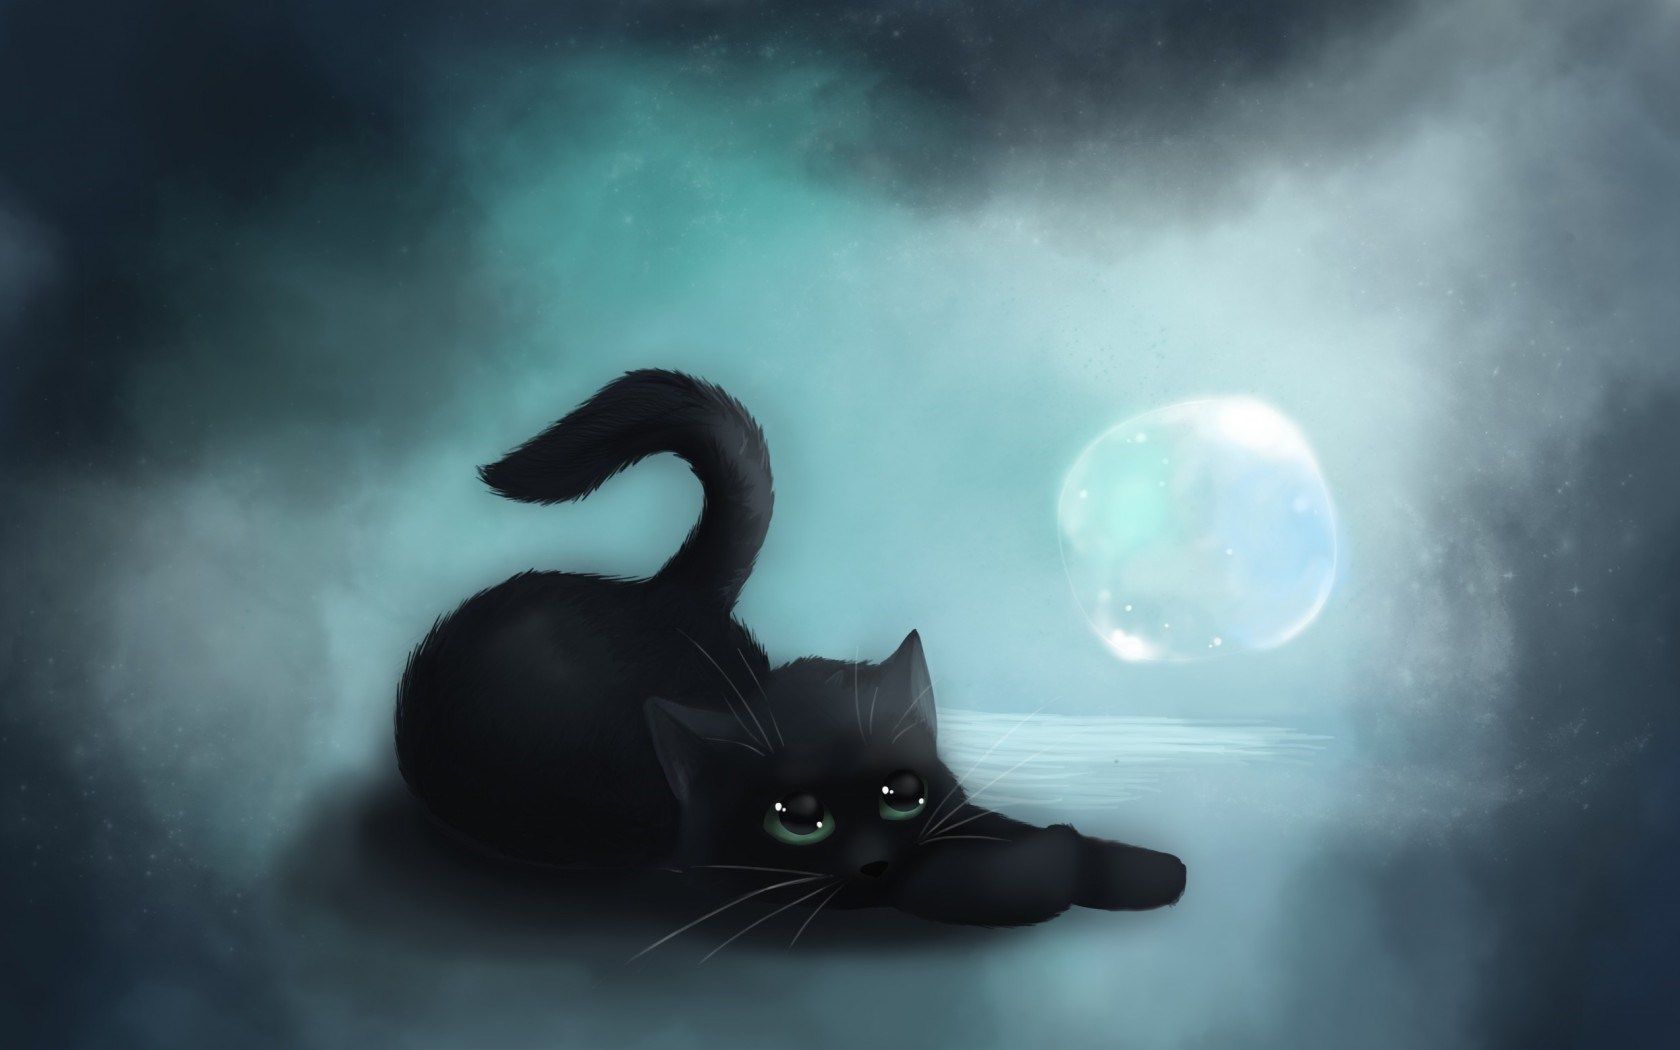  download cat art Black Cat In Moon Wallpaper Picture 12958 1680x1050